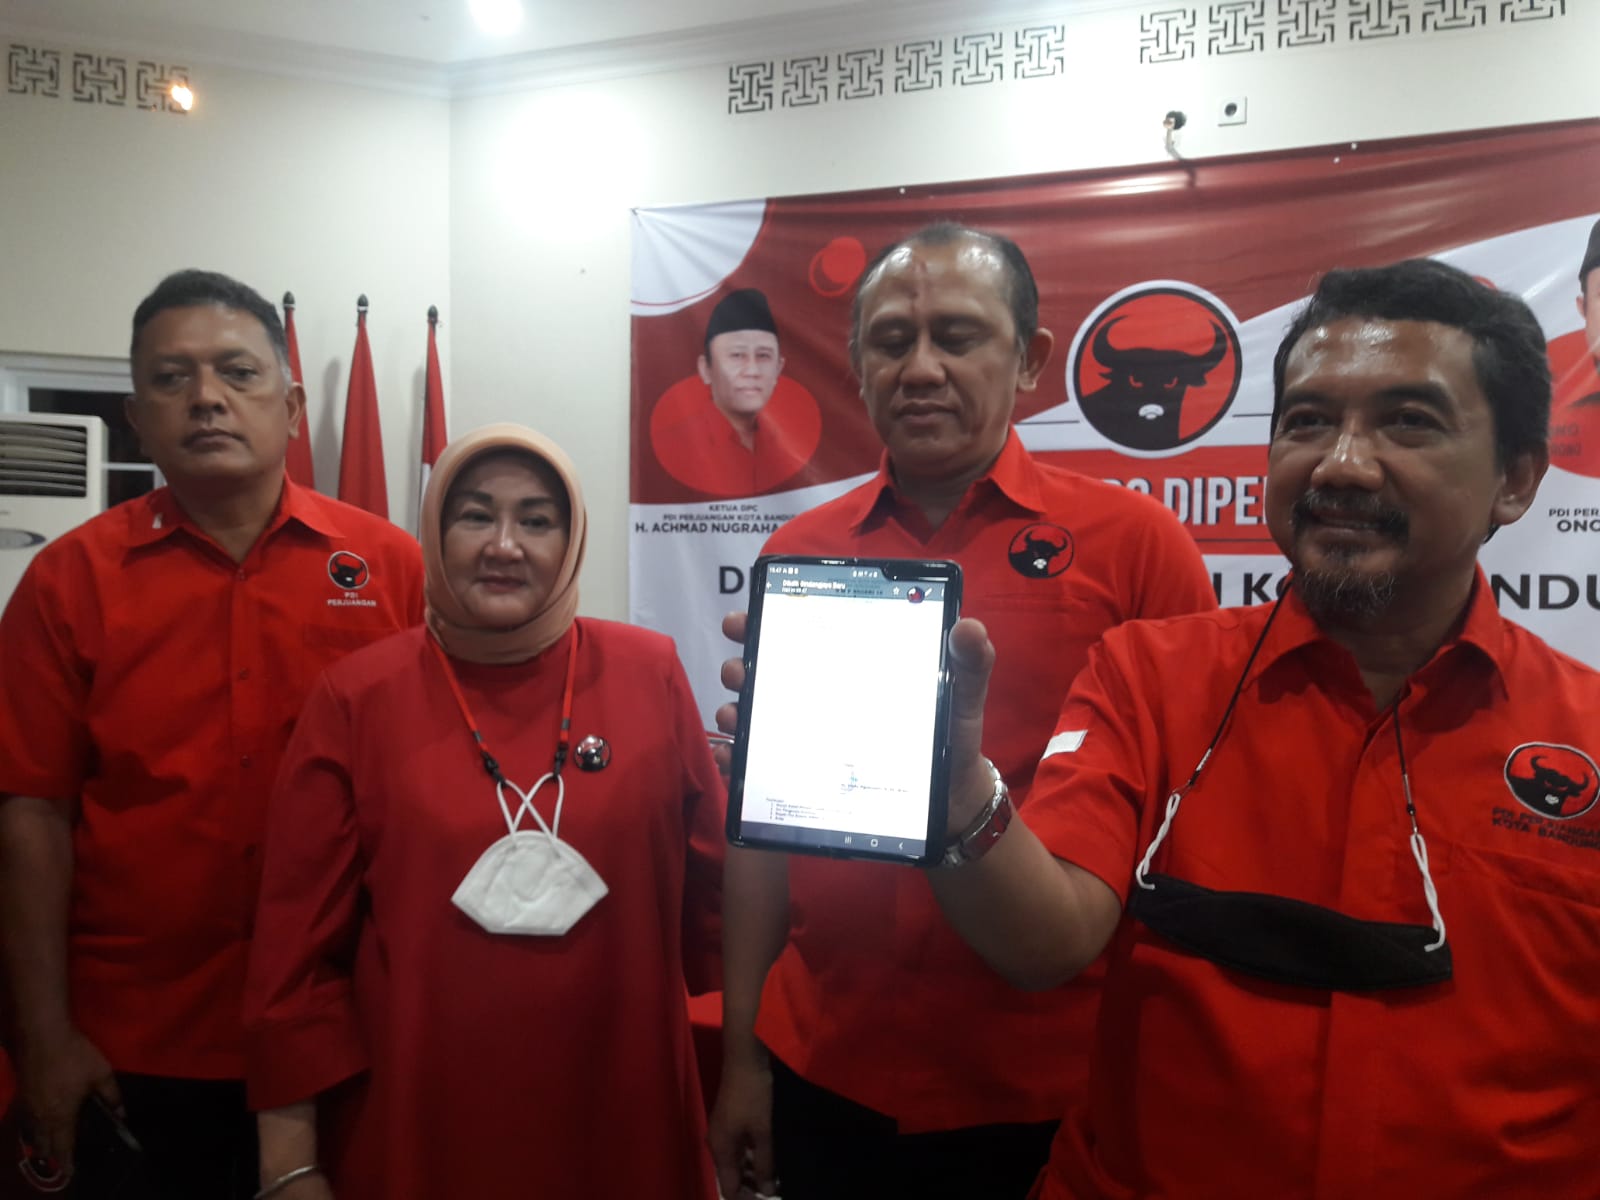 SAMPAIKAN PROTES: Pengurus PDIP Kota Bandung menunujukkan surat undangan pihak SMPN 16 Bandung yang mengajak orang tua siswa untuk mengikuti sosialisasi salah satu parpol.